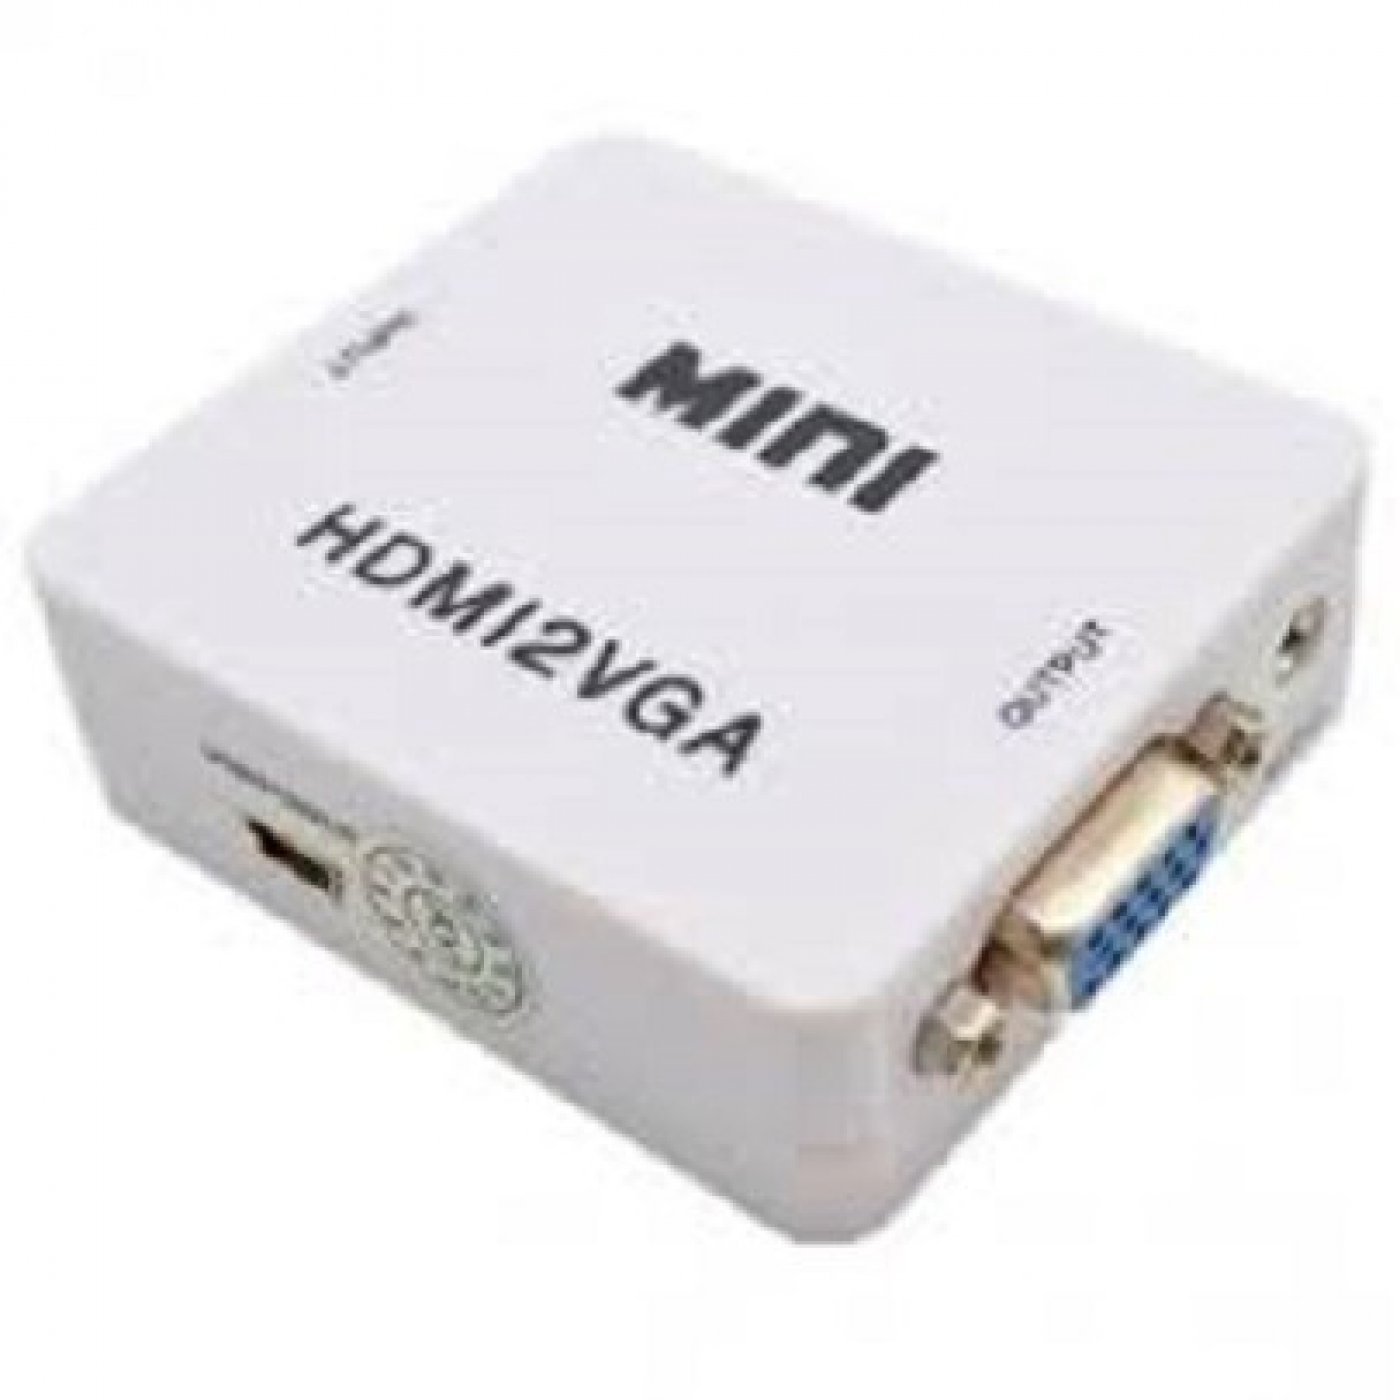 CONVERTIDOR MINI HDMI/VGA - Andino Tecnología